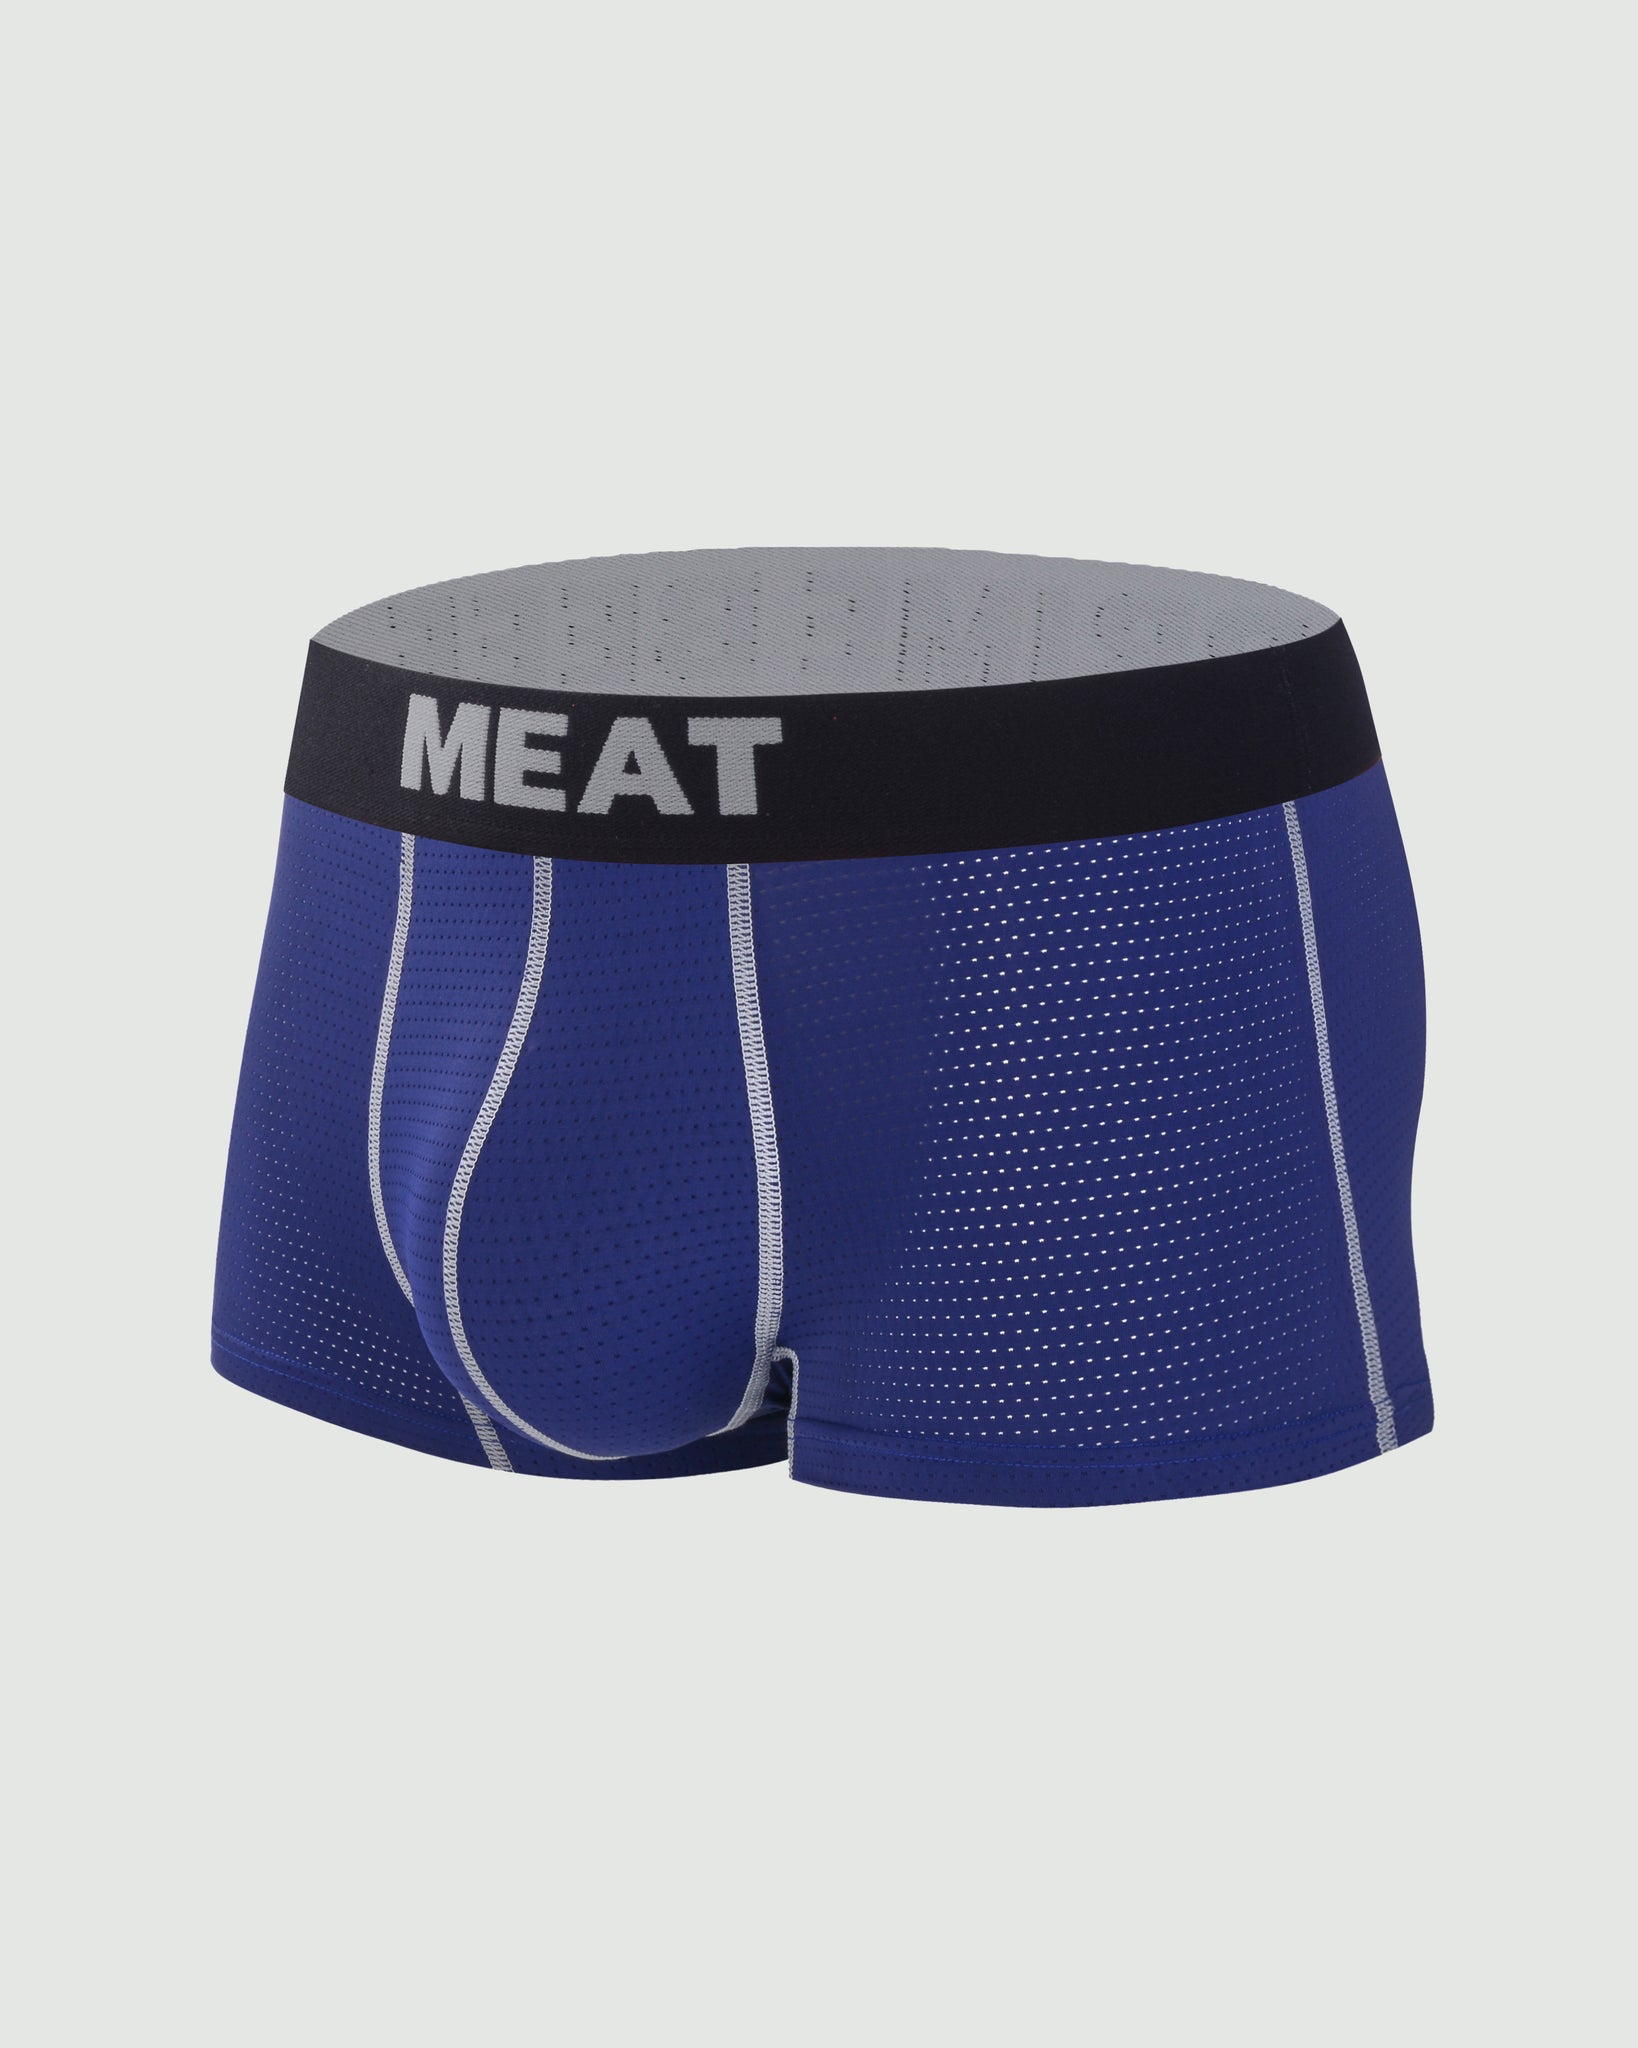 Meat Underwear Men's Underwear Boxers Briefs Soft Comfortable Cotton  Viscose Underwear Trunks Polyester Briefs, Navy, XX-Large : :  Clothing, Shoes & Accessories